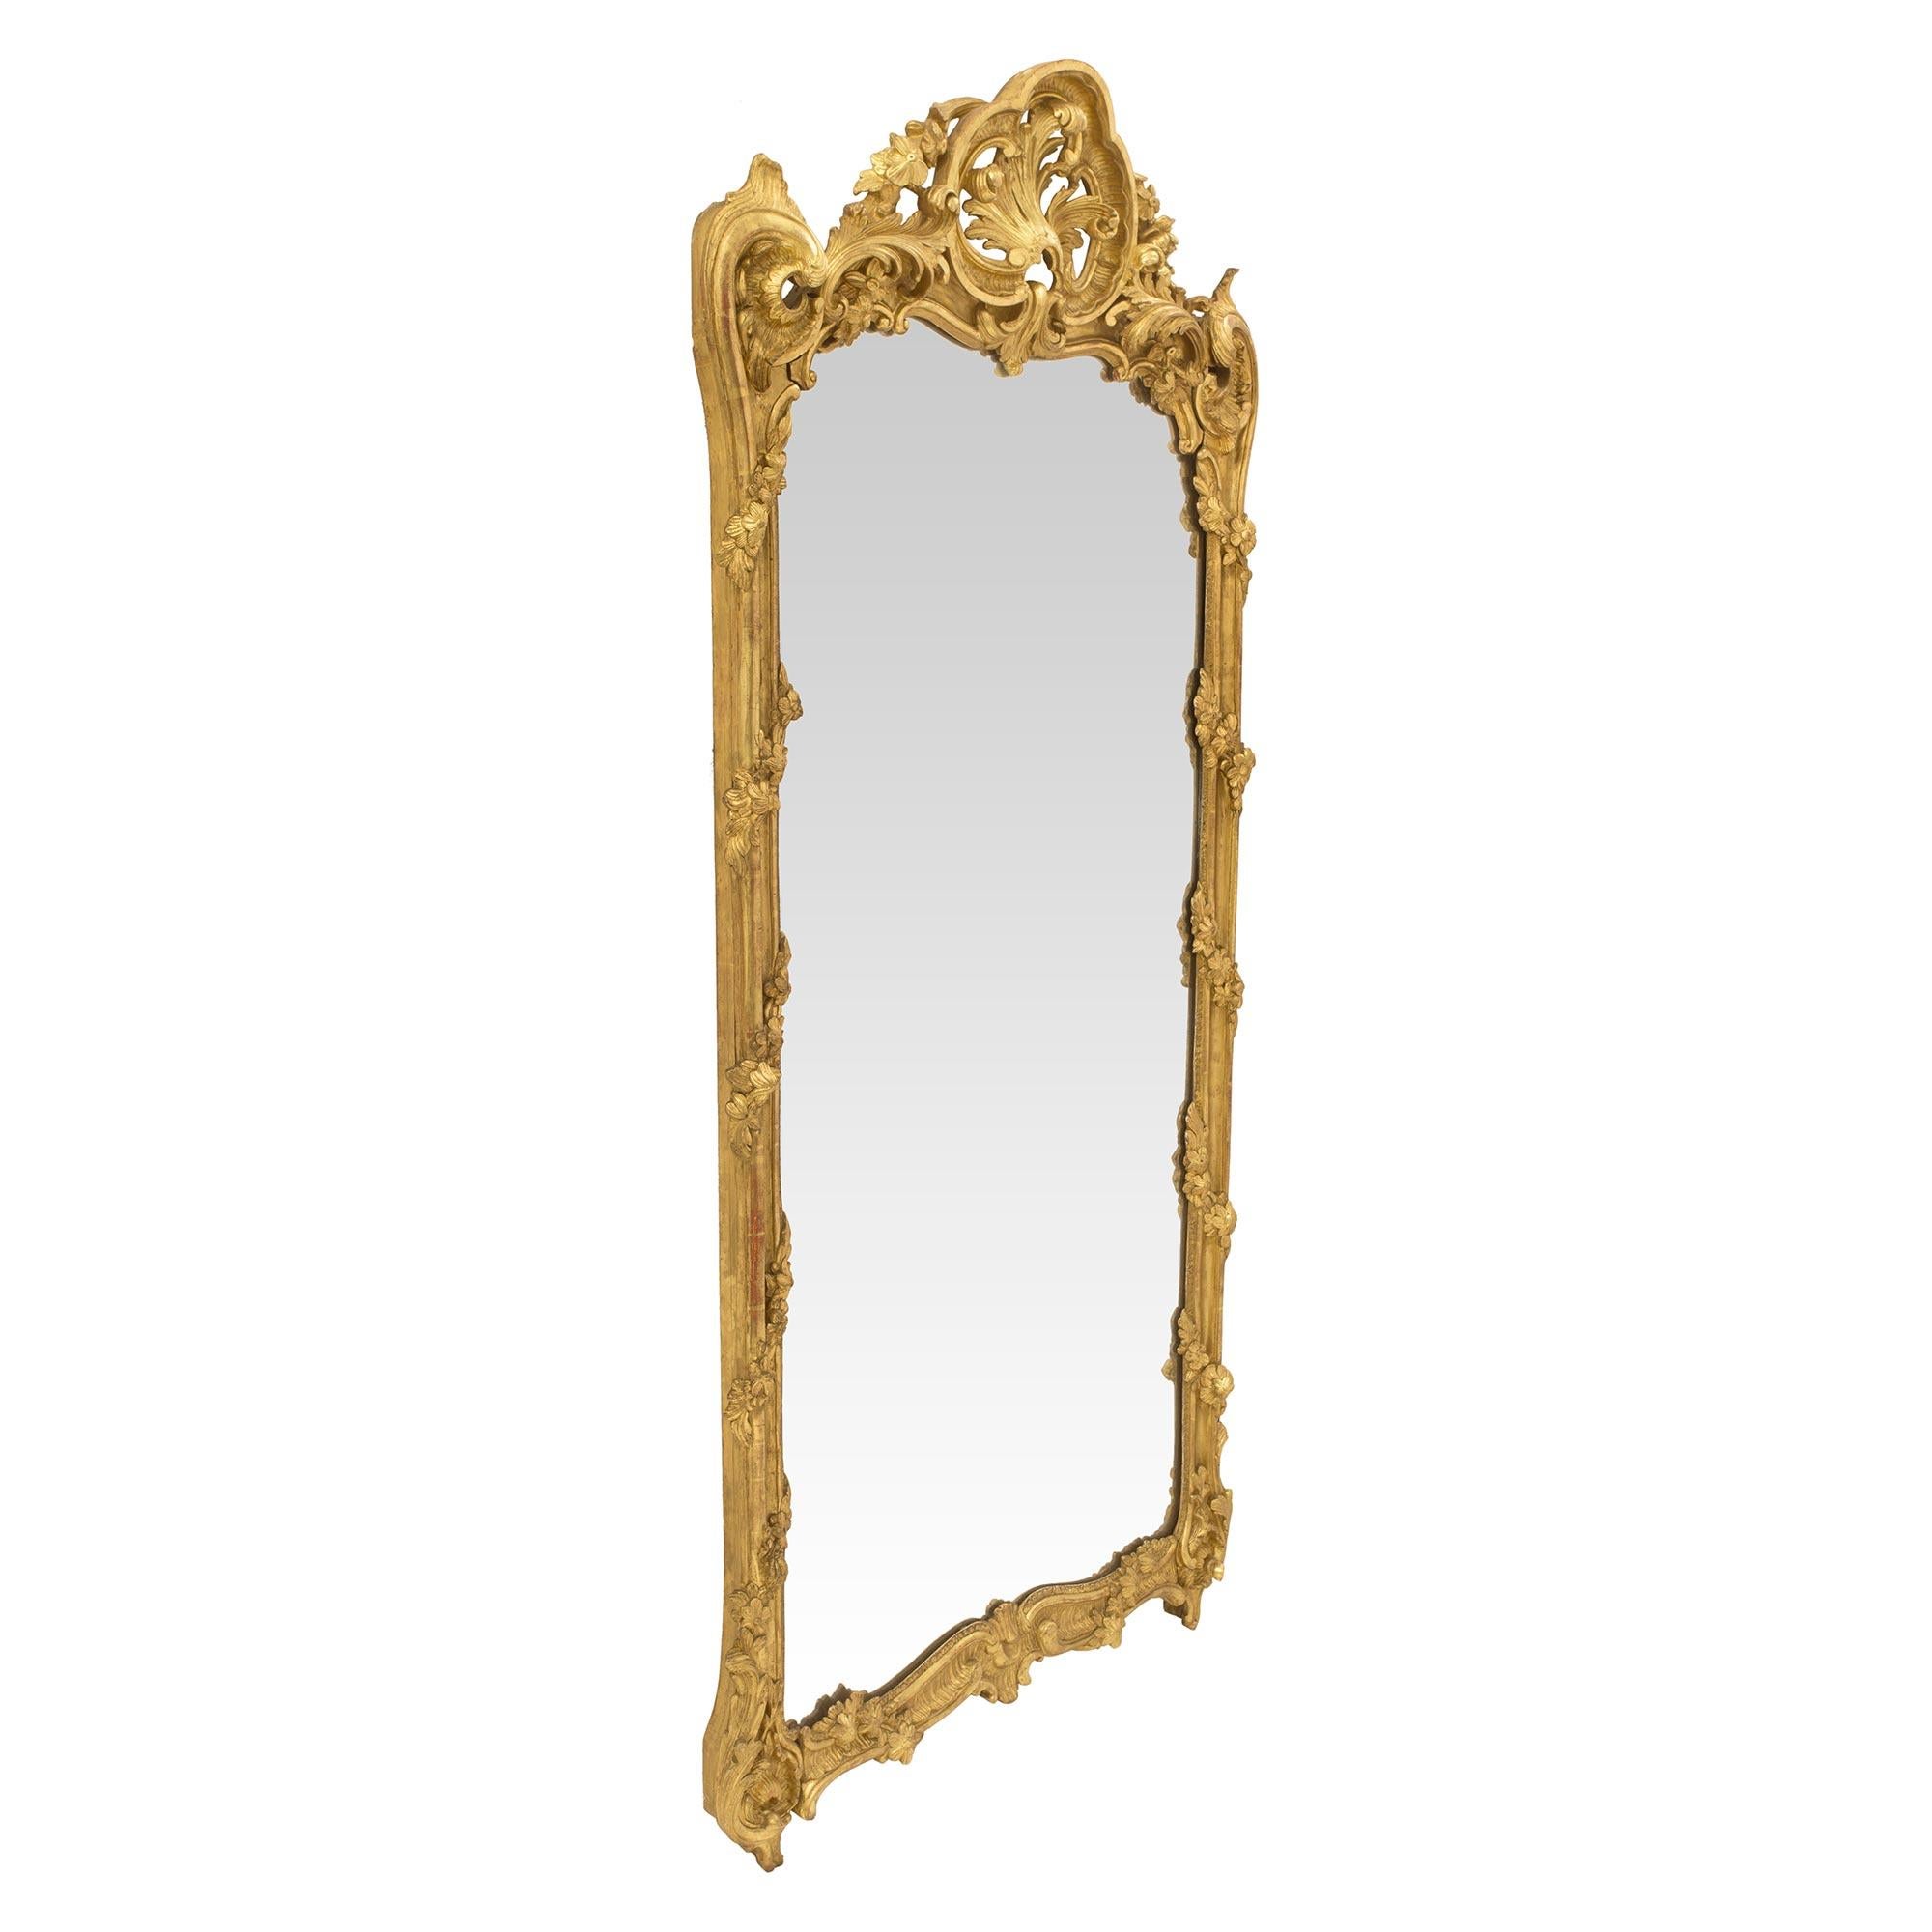 Eine erstaunliche und großen Maßstab Französisch 18. Jahrhundert Régence Periode Vergoldung Spiegel. Die originale Spiegelplatte ist von einer schönen und äußerst dekorativen, gesprenkelten Bordüre mit charmanten und fein geschnitzten, gewickelten